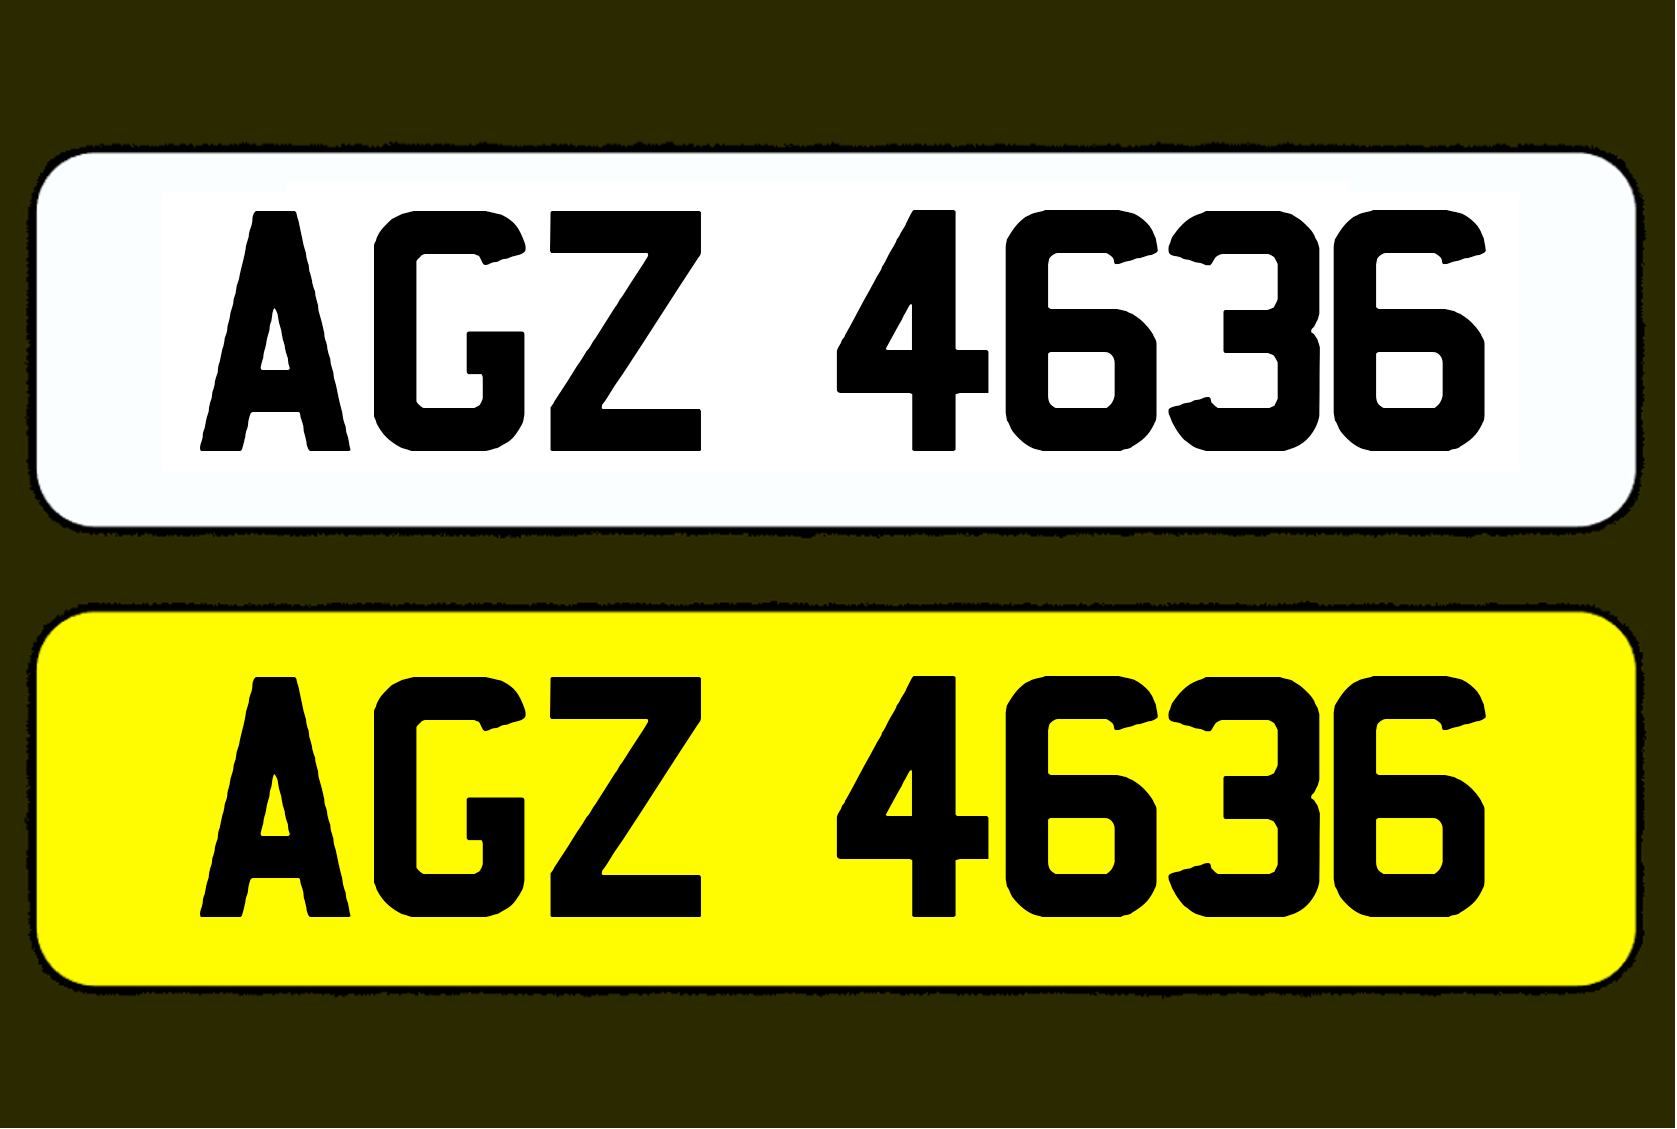 AGZ 4636